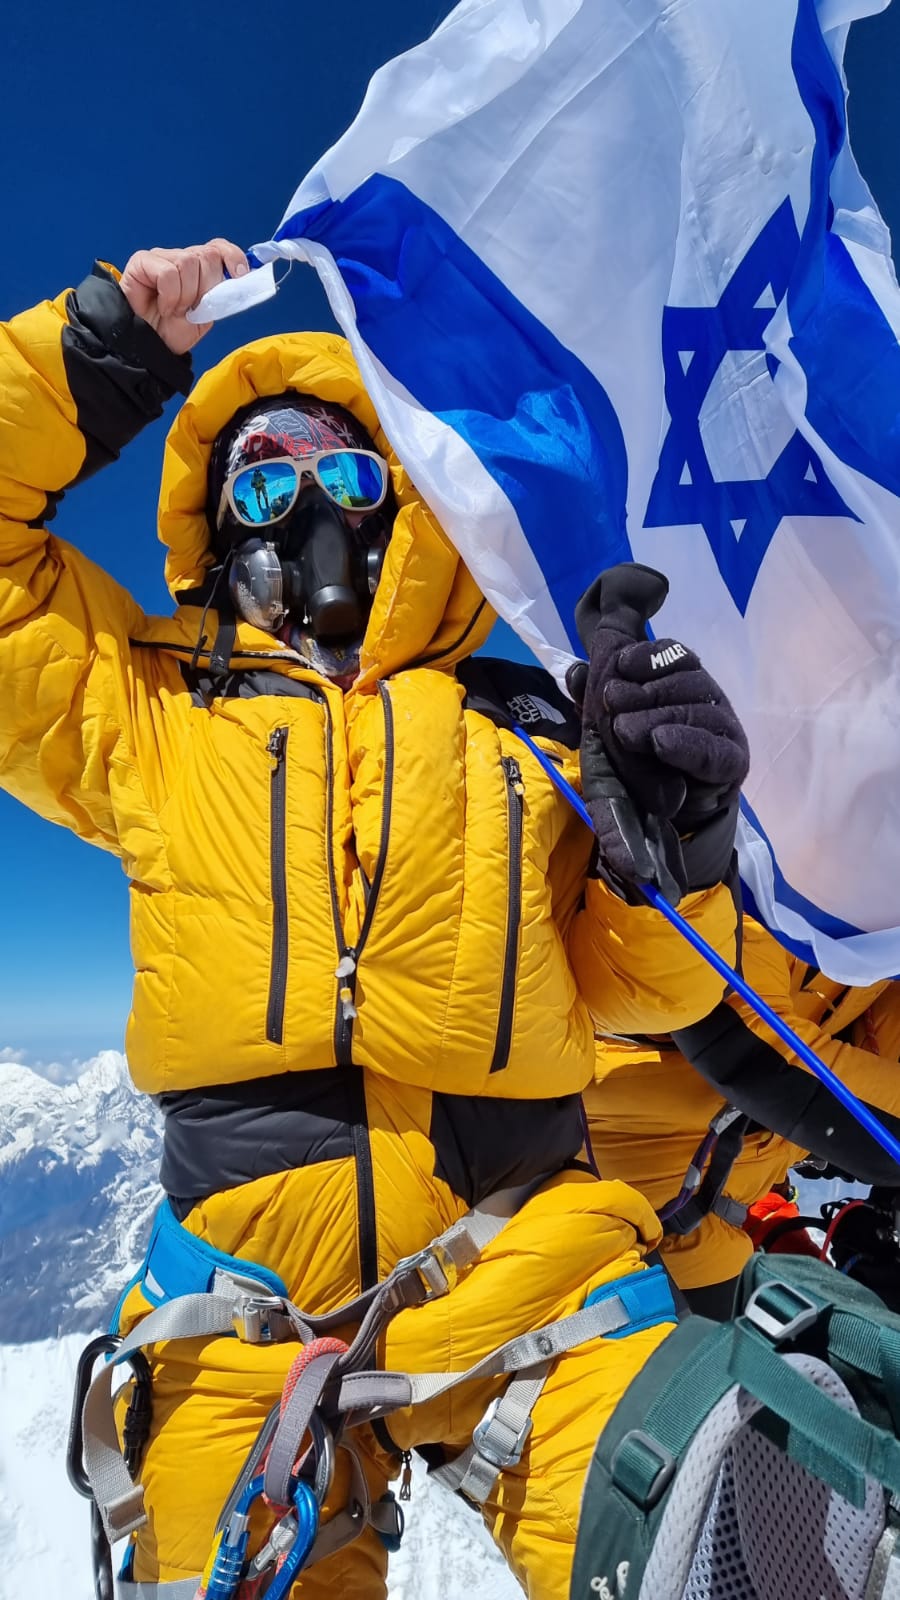 דניאל וולפסון האישה הישראלית היחידה שכבשה את האוורסט תניף את דגל ישראל על פסגת החרמון במרוץ החרמון צ’אלנג’ מרתון ישראל